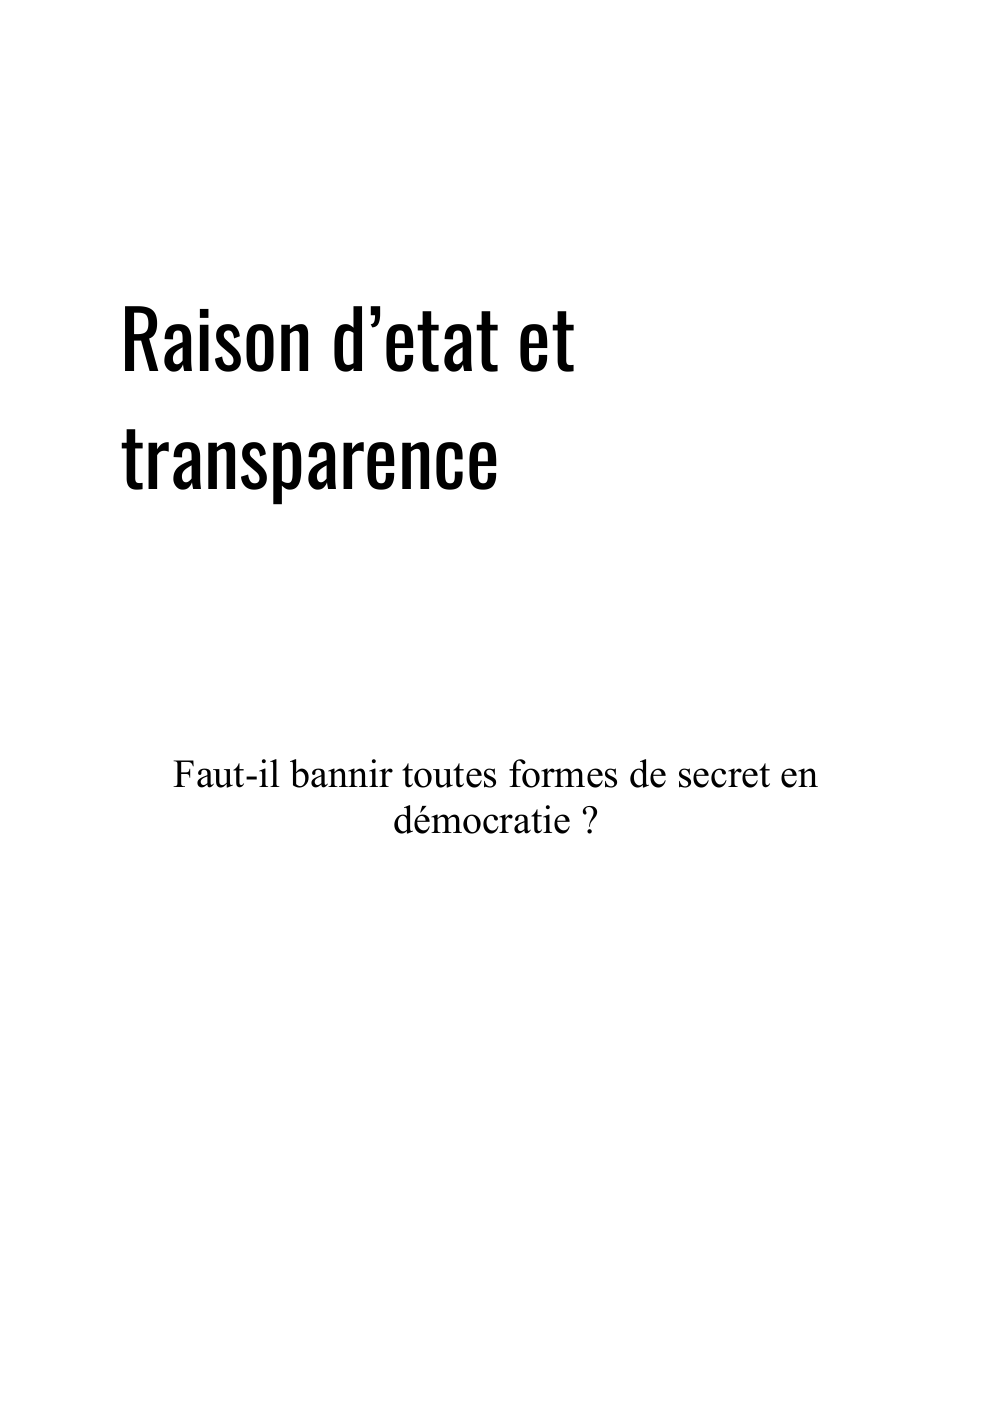 Prévisualisation du document exposé sur les raisons d'état et transparence: Faut-il bannir toutes formes de secret en démocratie ?